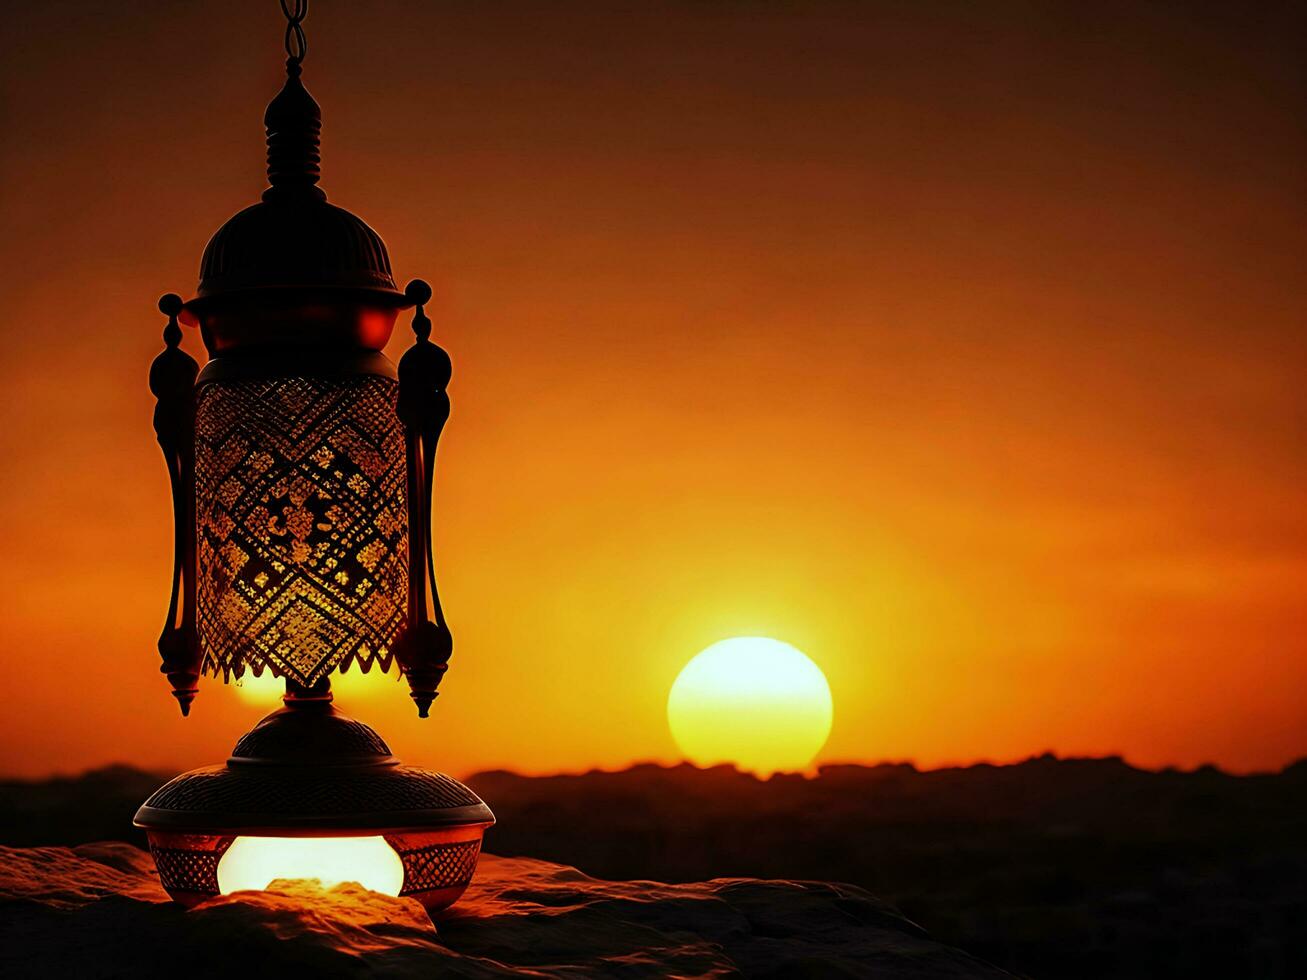 islamic lampa i kväll med Sol ljus bakgrund foto